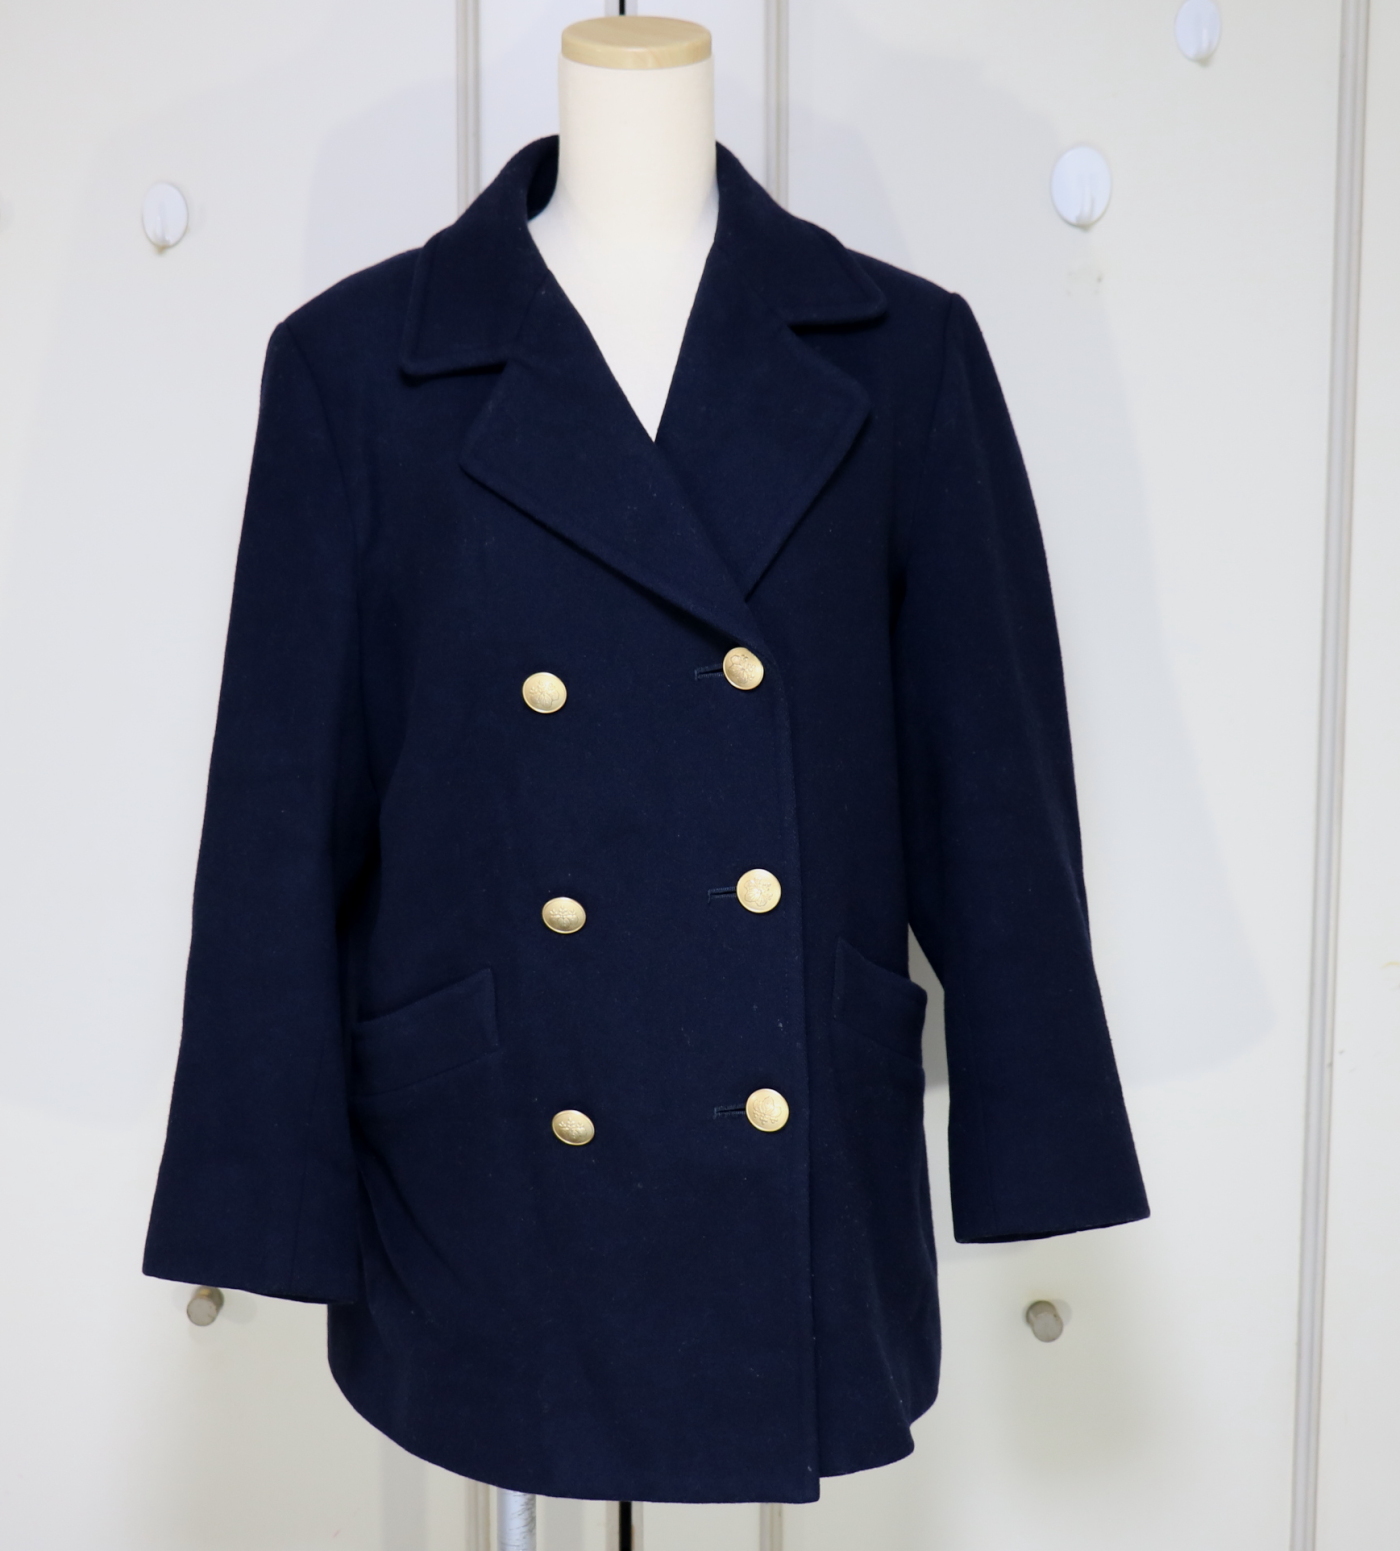 東京都豊島区 十文字高校の指定コートを買取しました | 制服買取東京2020